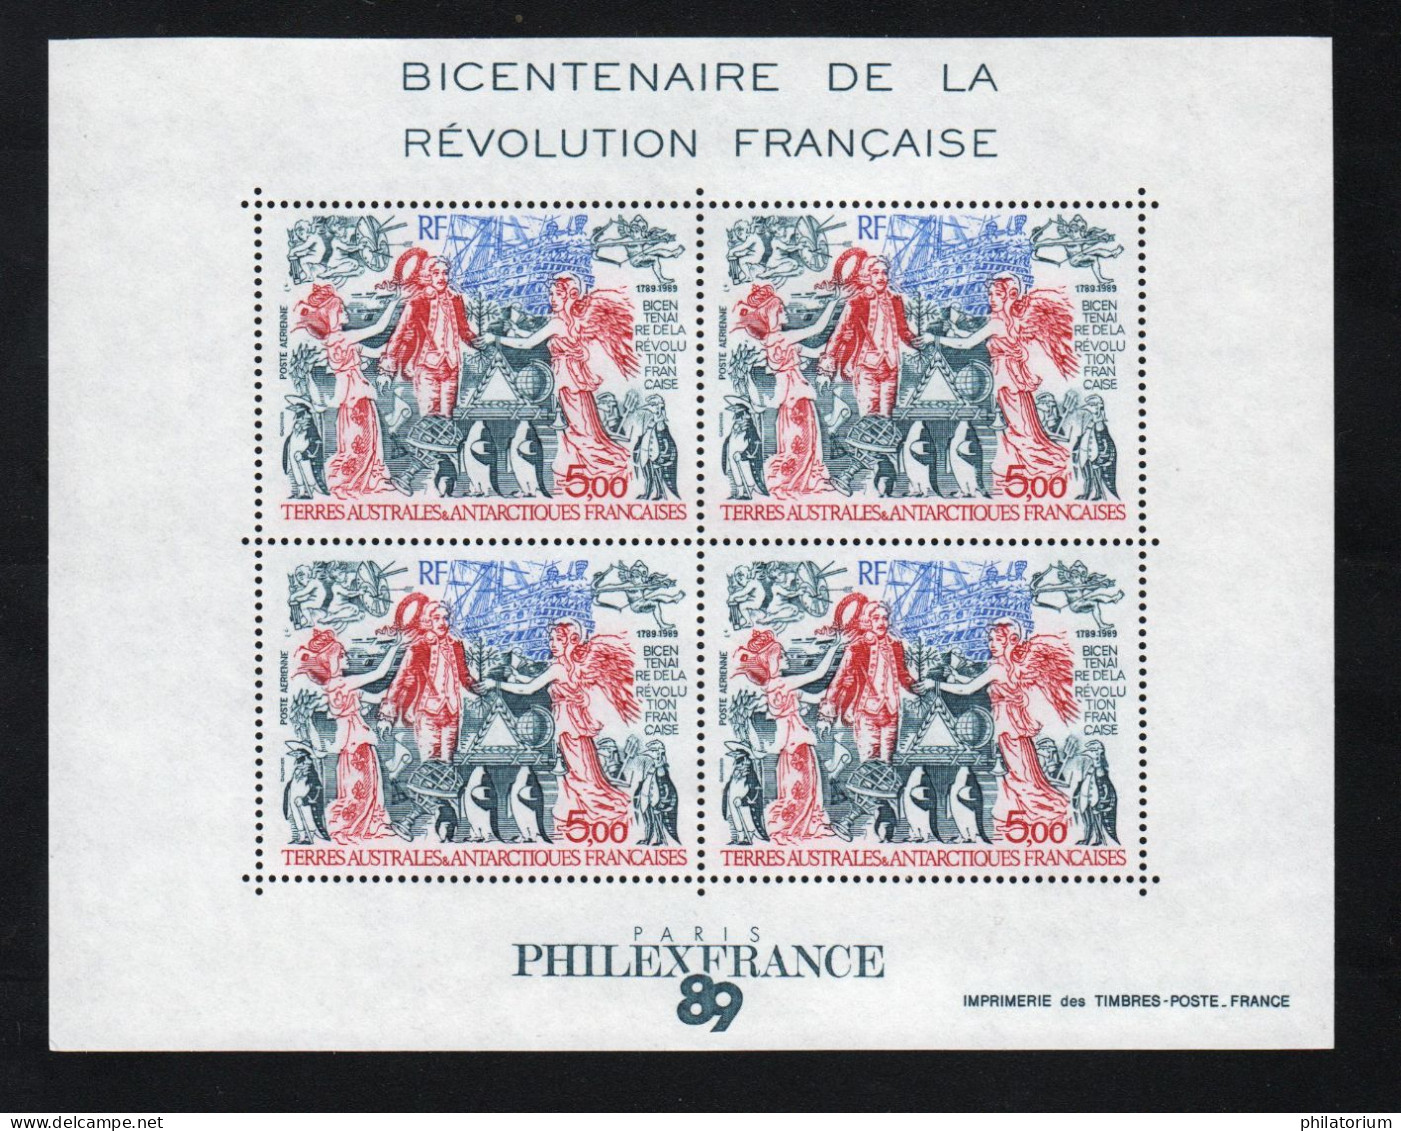 TAAF, **,  Yv BF 1, Mi BL 1, SG MS 257, Bicentenaire De La Révolution Française, - Hojas Bloque